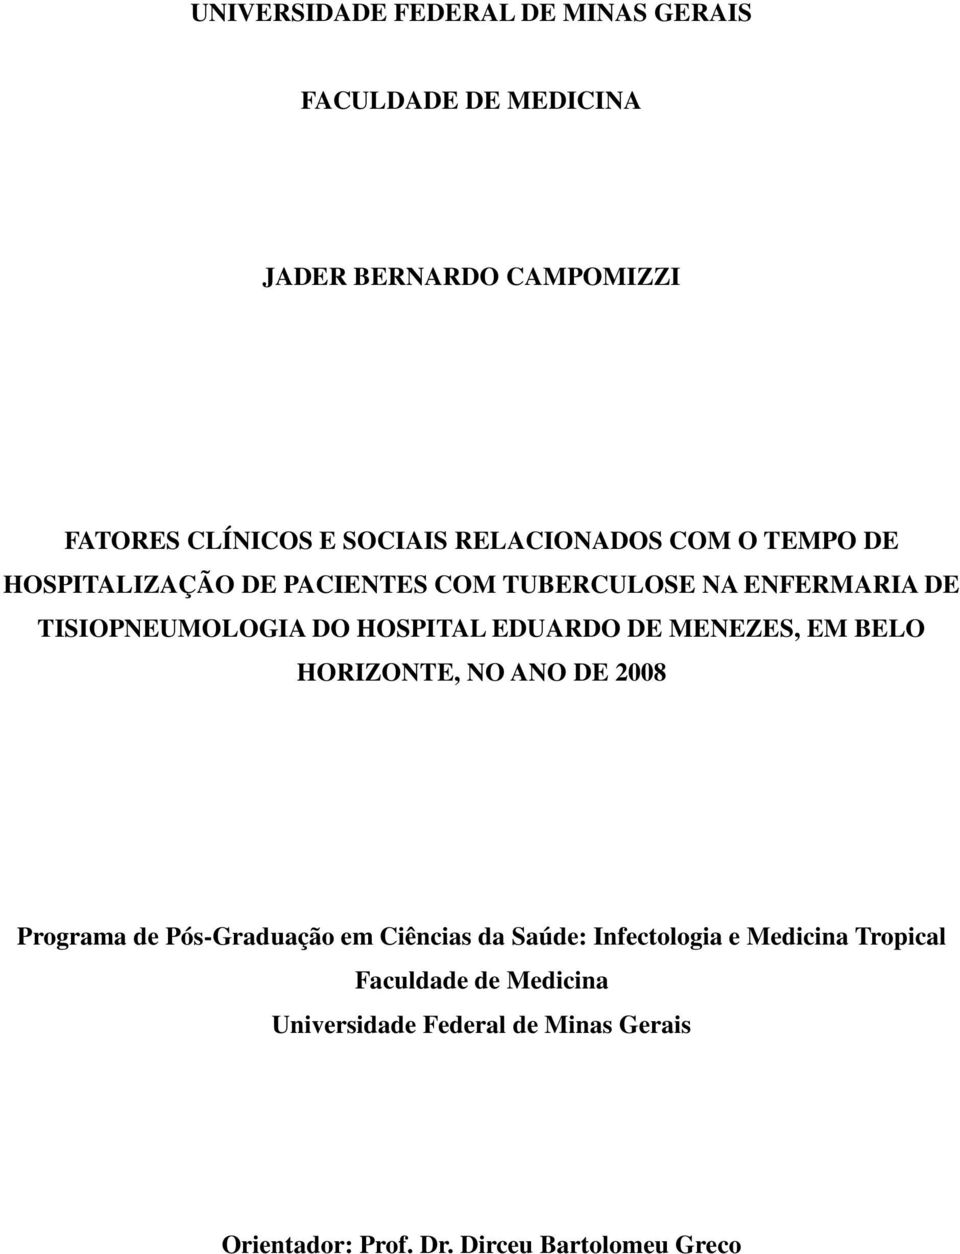 EDUARDO DE MENEZES, EM BELO HORIZONTE, NO ANO DE 2008 Programa de Pós-Graduação em Ciências da Saúde: Infectologia e